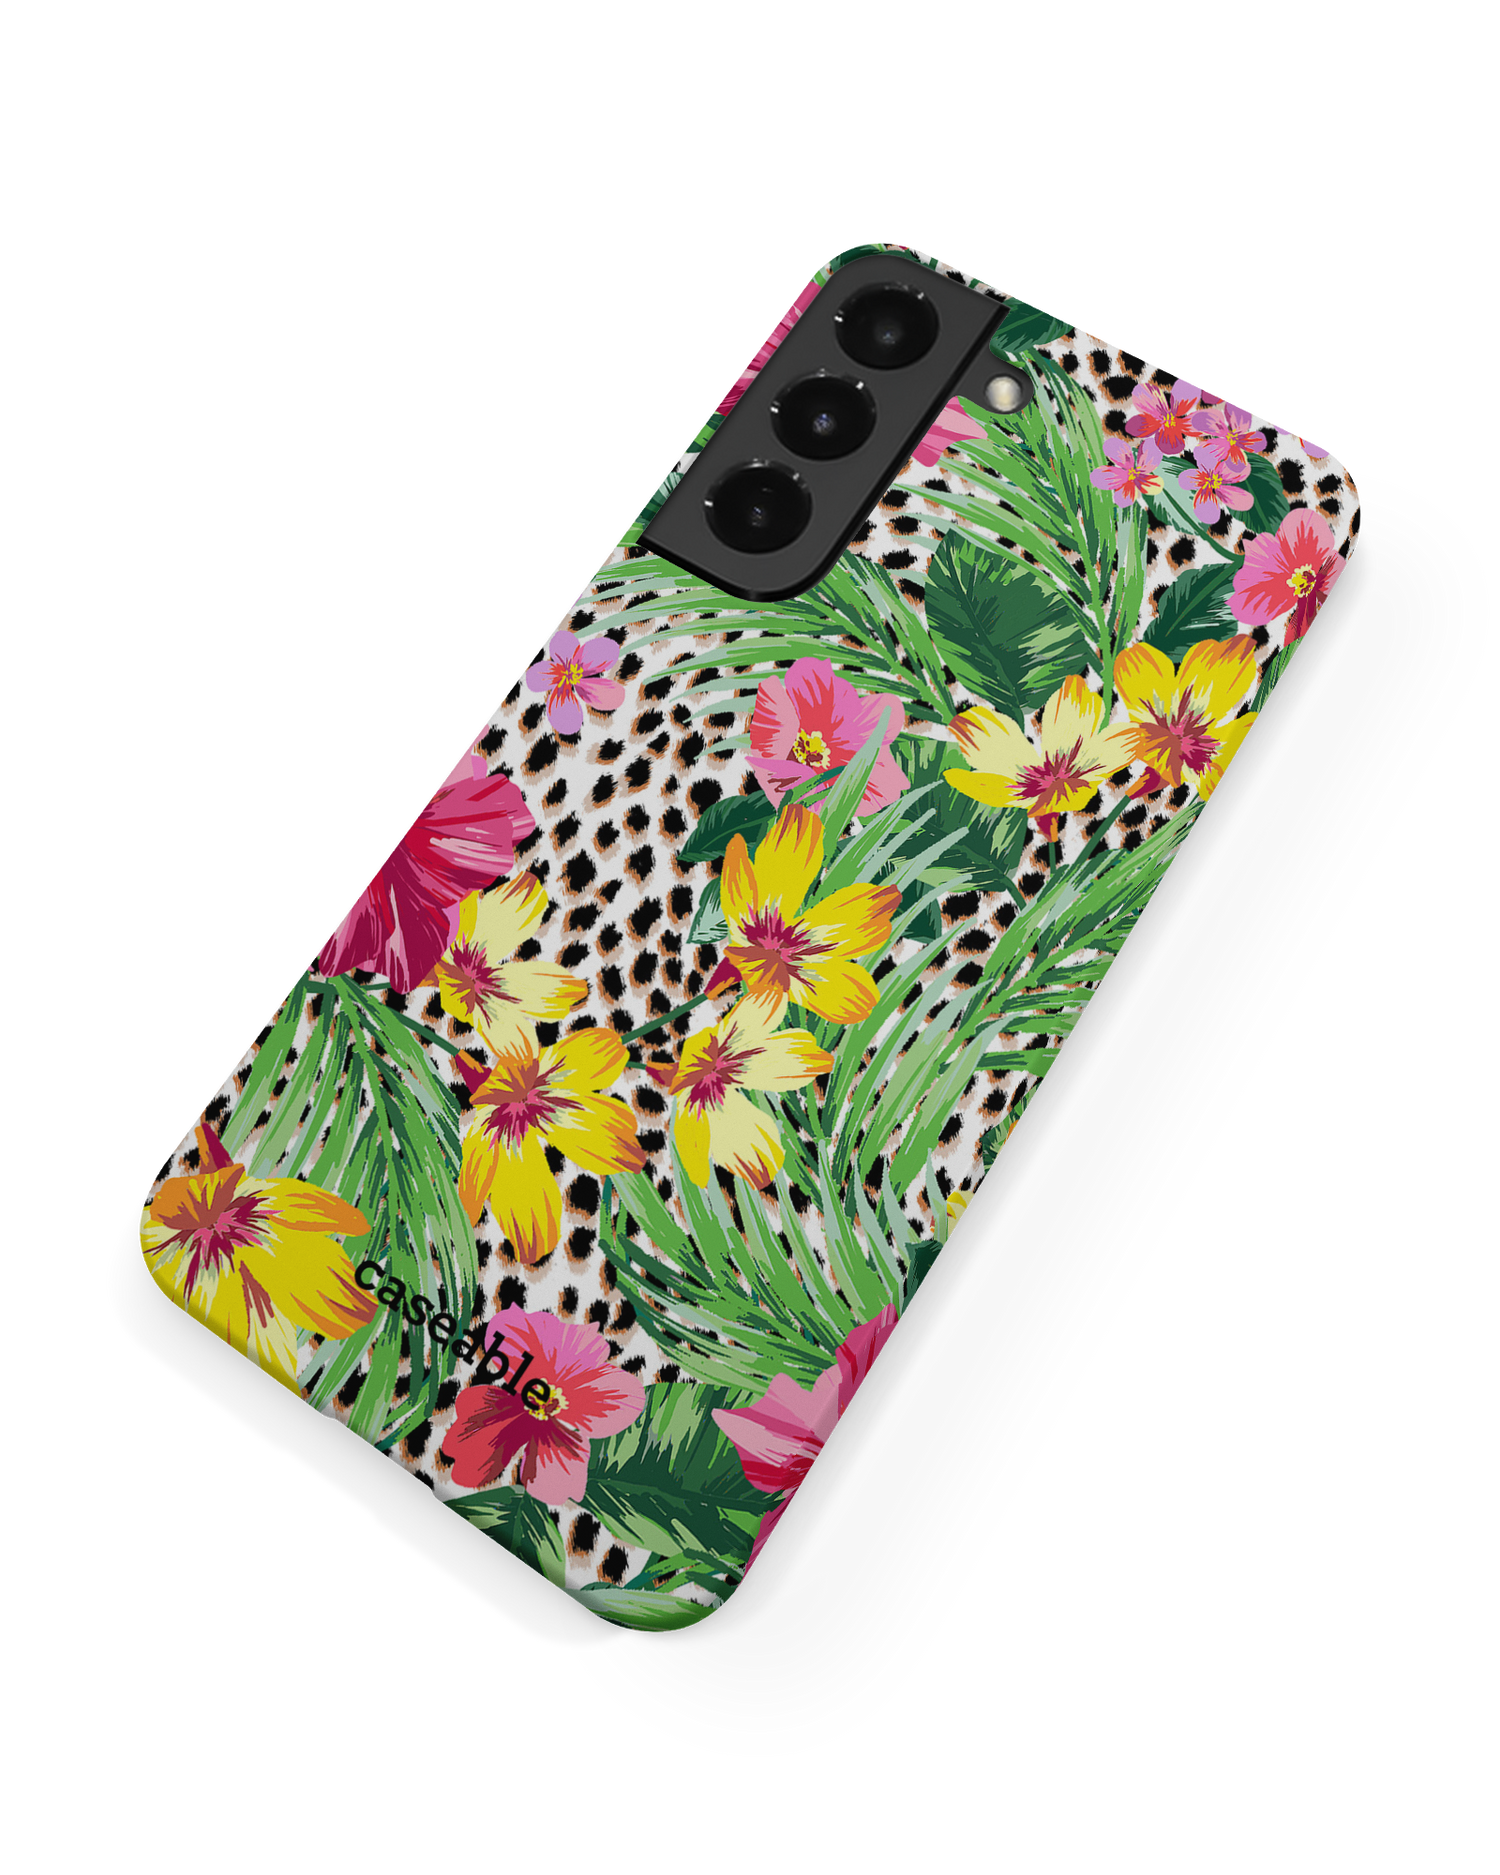 Tropical Cheetah Hard Shell Phone Case Samsung Galaxy S22 Plus 5G: Back View